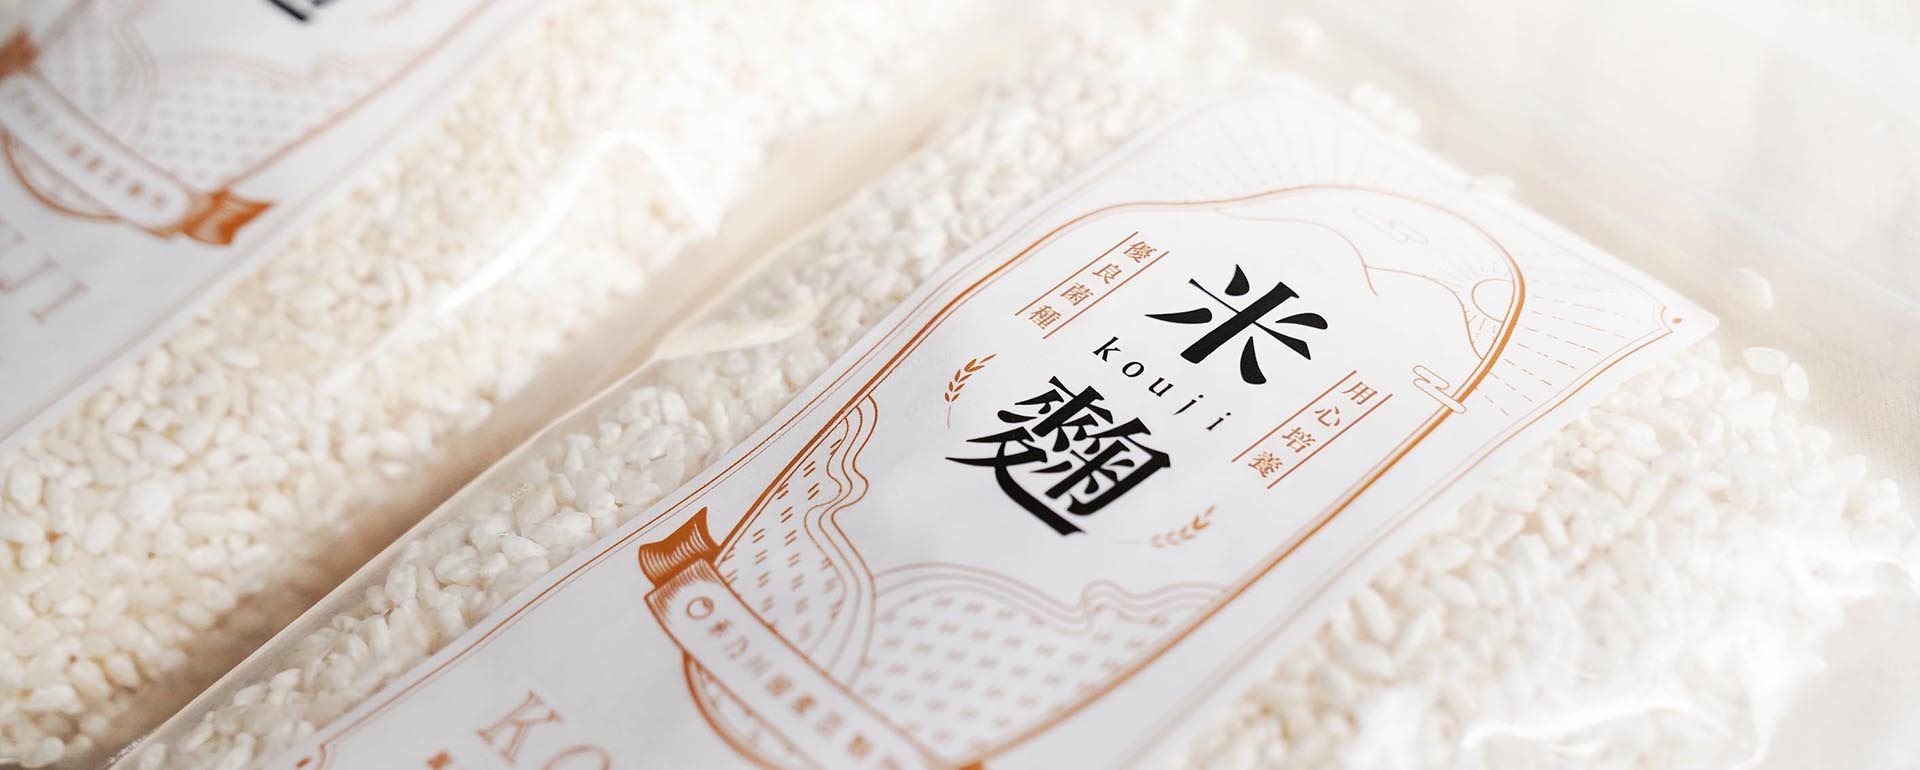 還在自製米麴嗎？禾乃川國產豆製所使用臺灣白米，提供臺灣白米麴新選擇!